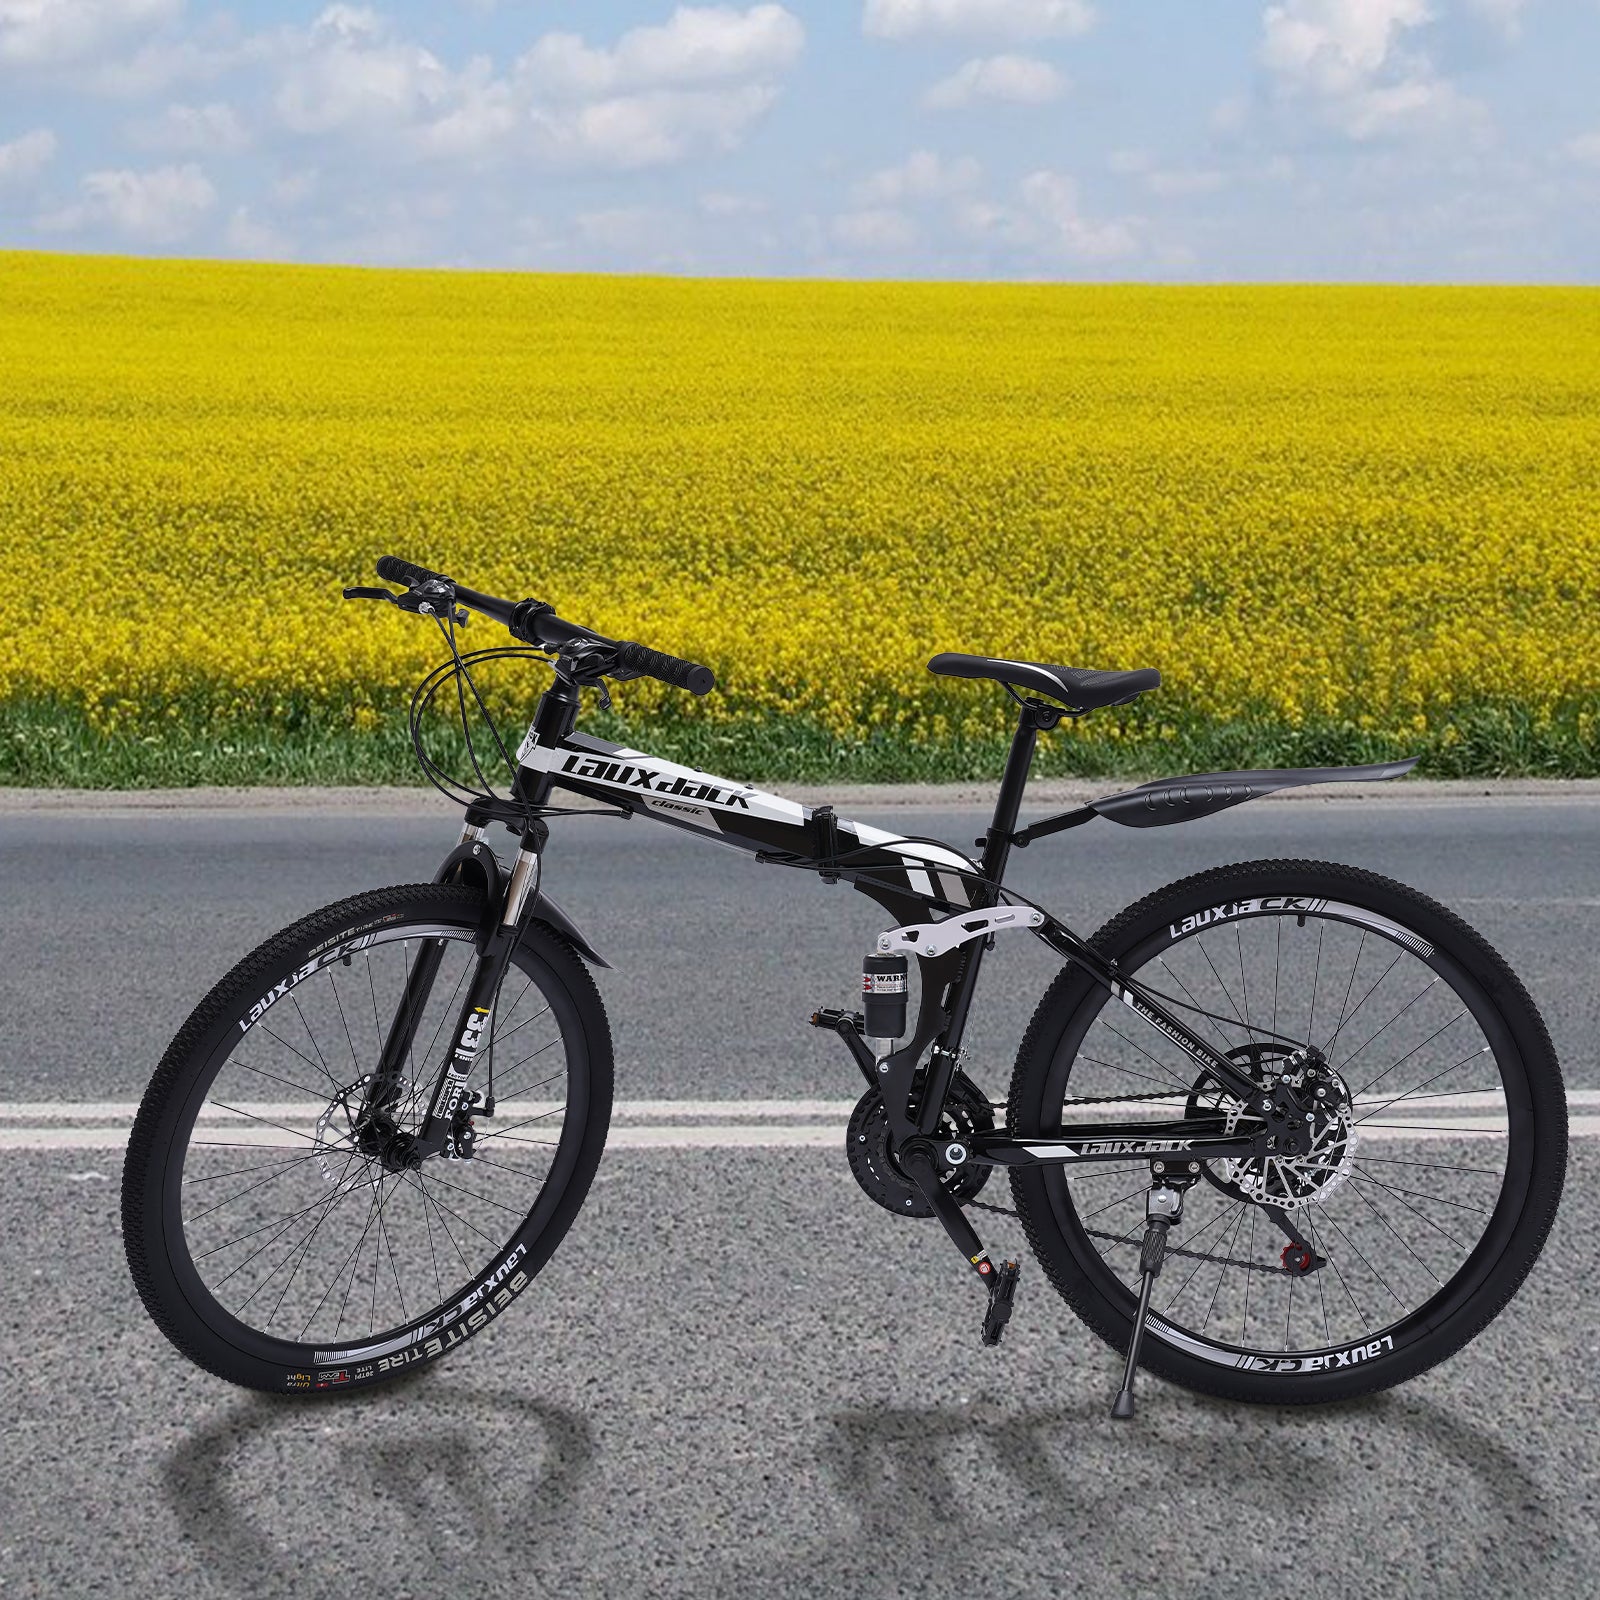 Mountain Bike Bicicletta Pieghevole da 26 pollici, 21 velocità, MTB pieghevole, per sport all'aria aperta, con freni a doppio disco